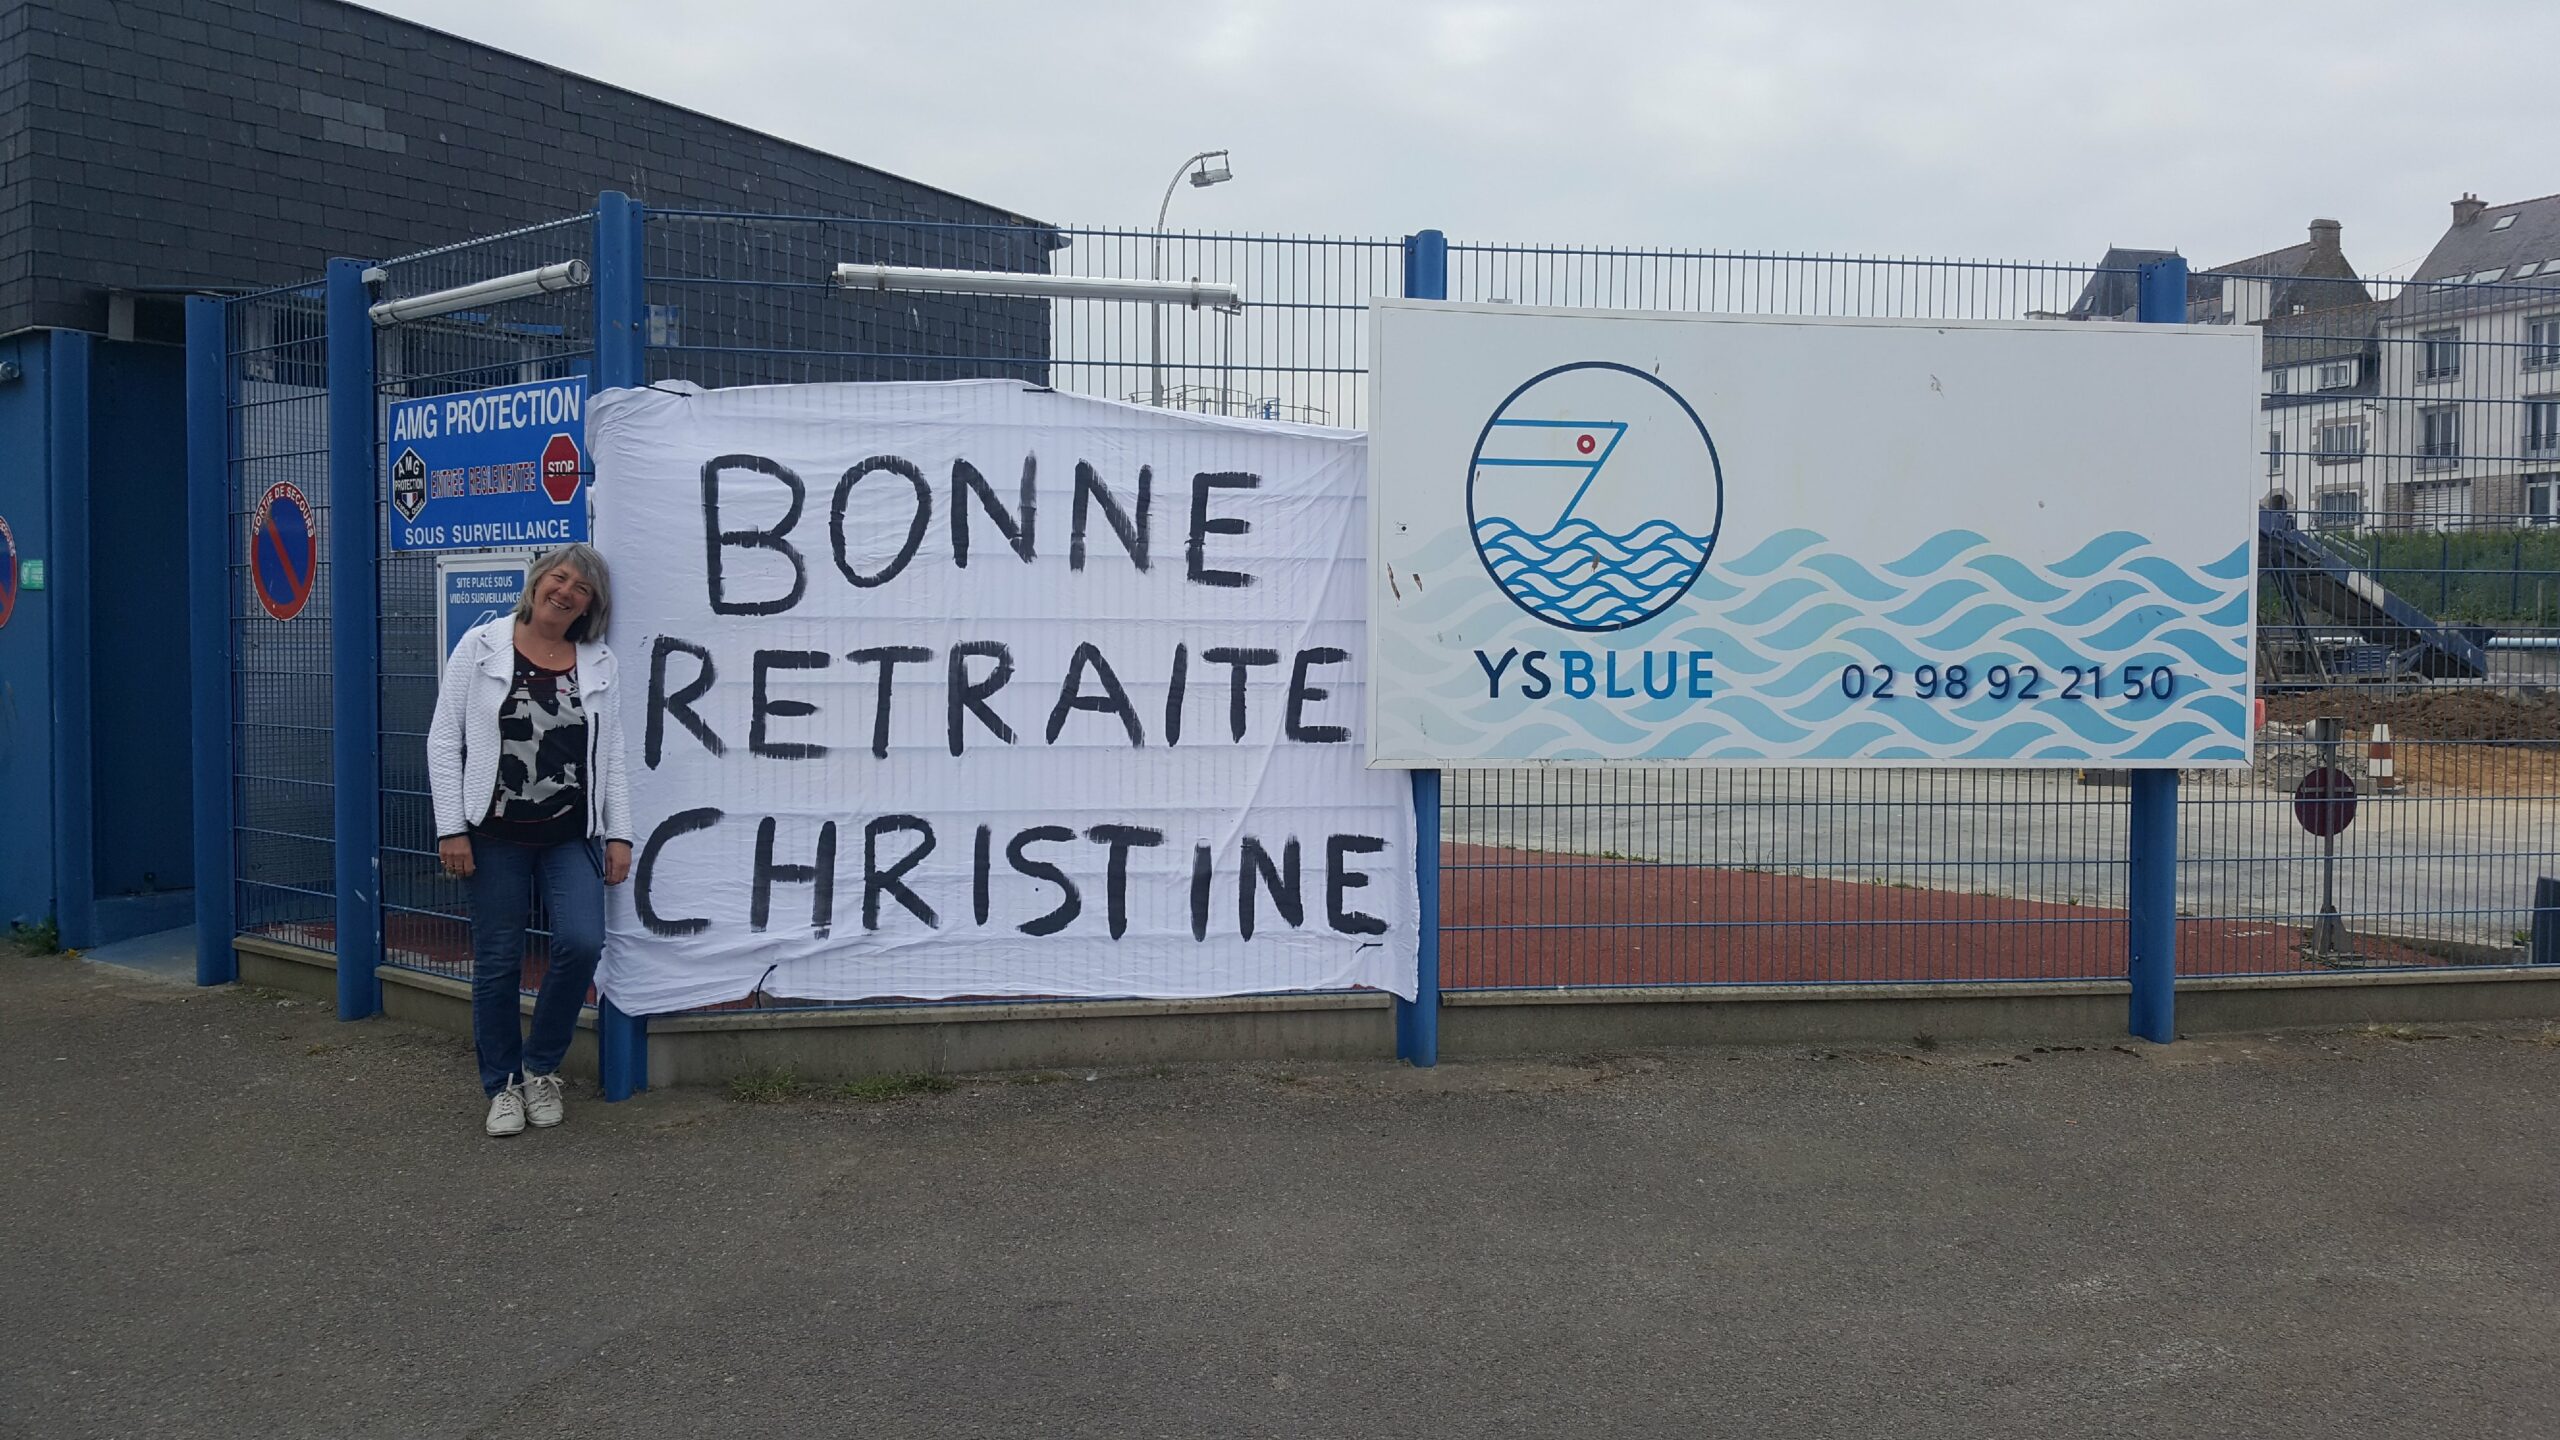 Bonne retraite Christine